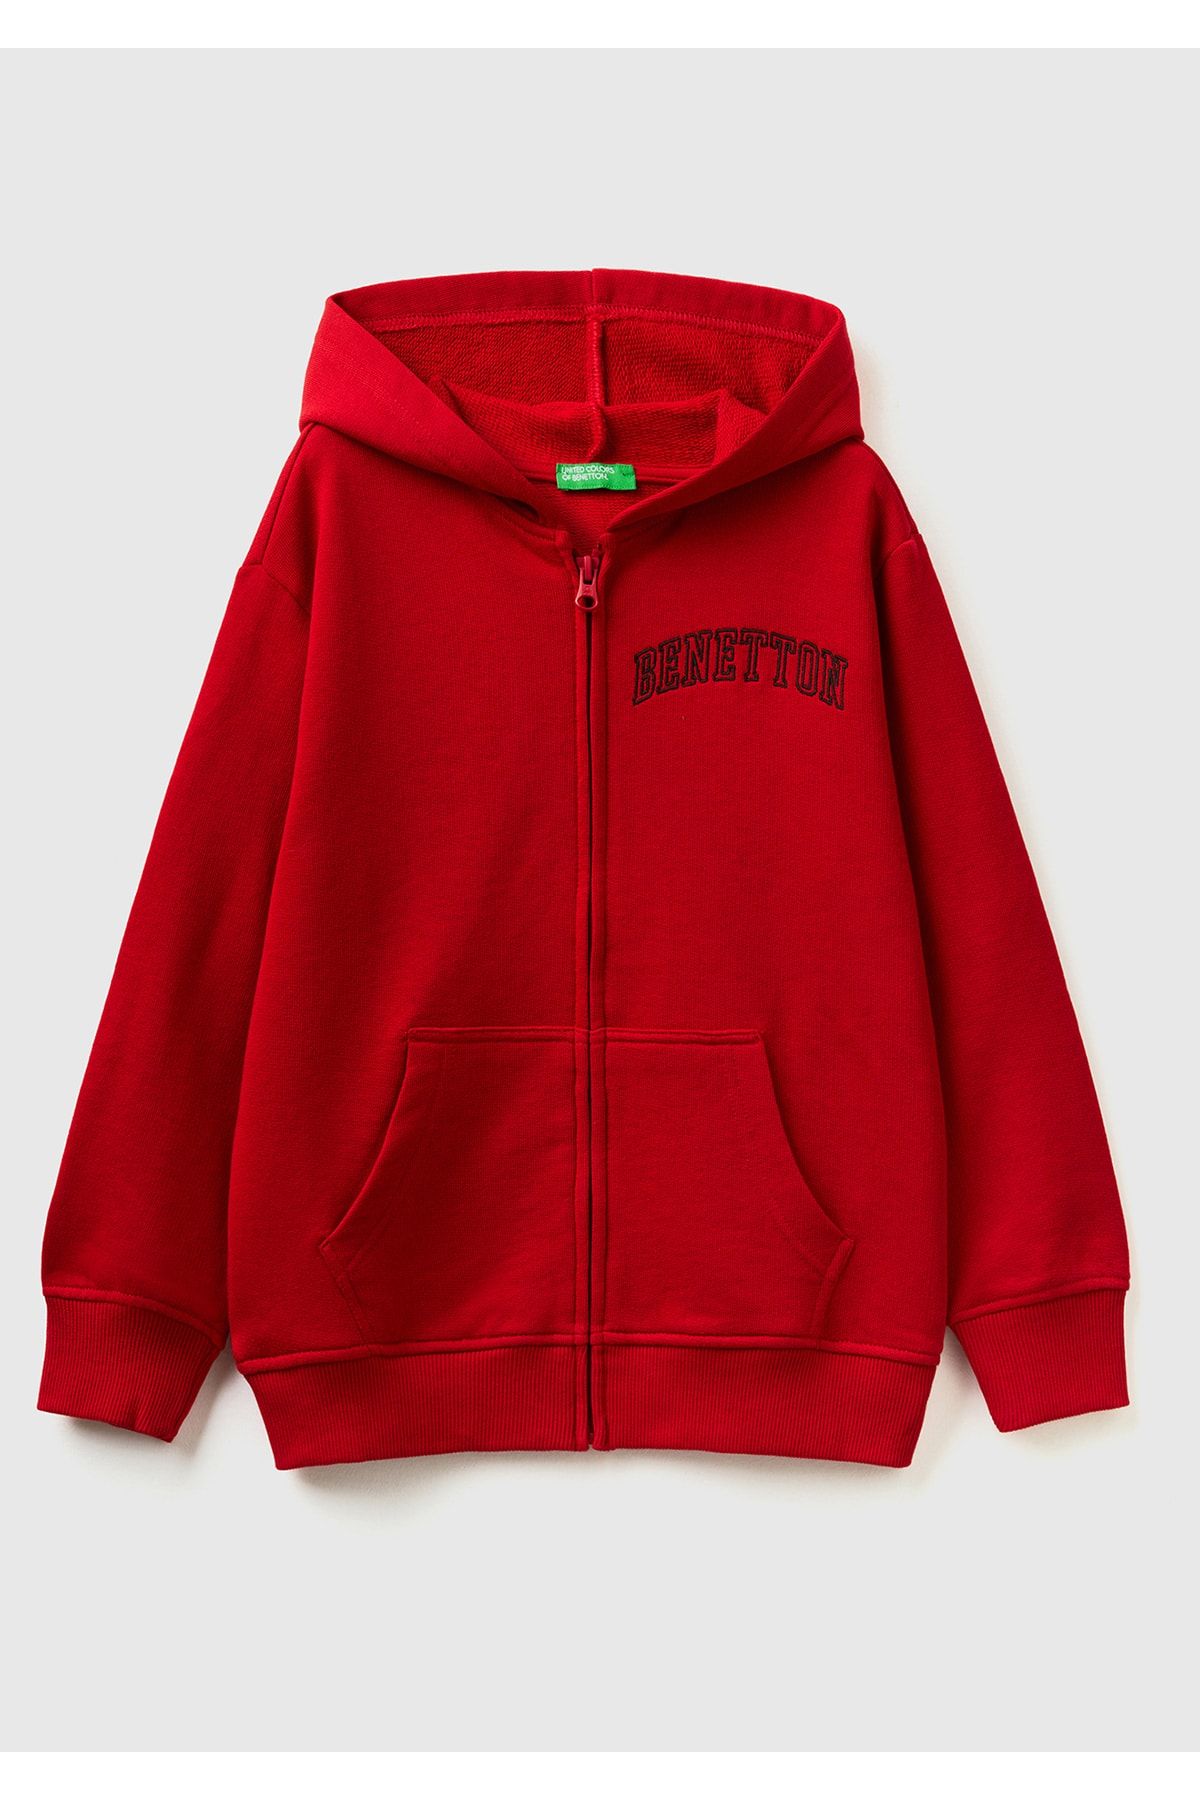 United Colors of Benetton Erkek Çocuk 0V3 Slogan Baskılı Sweatshirt Koyu Kırmızı